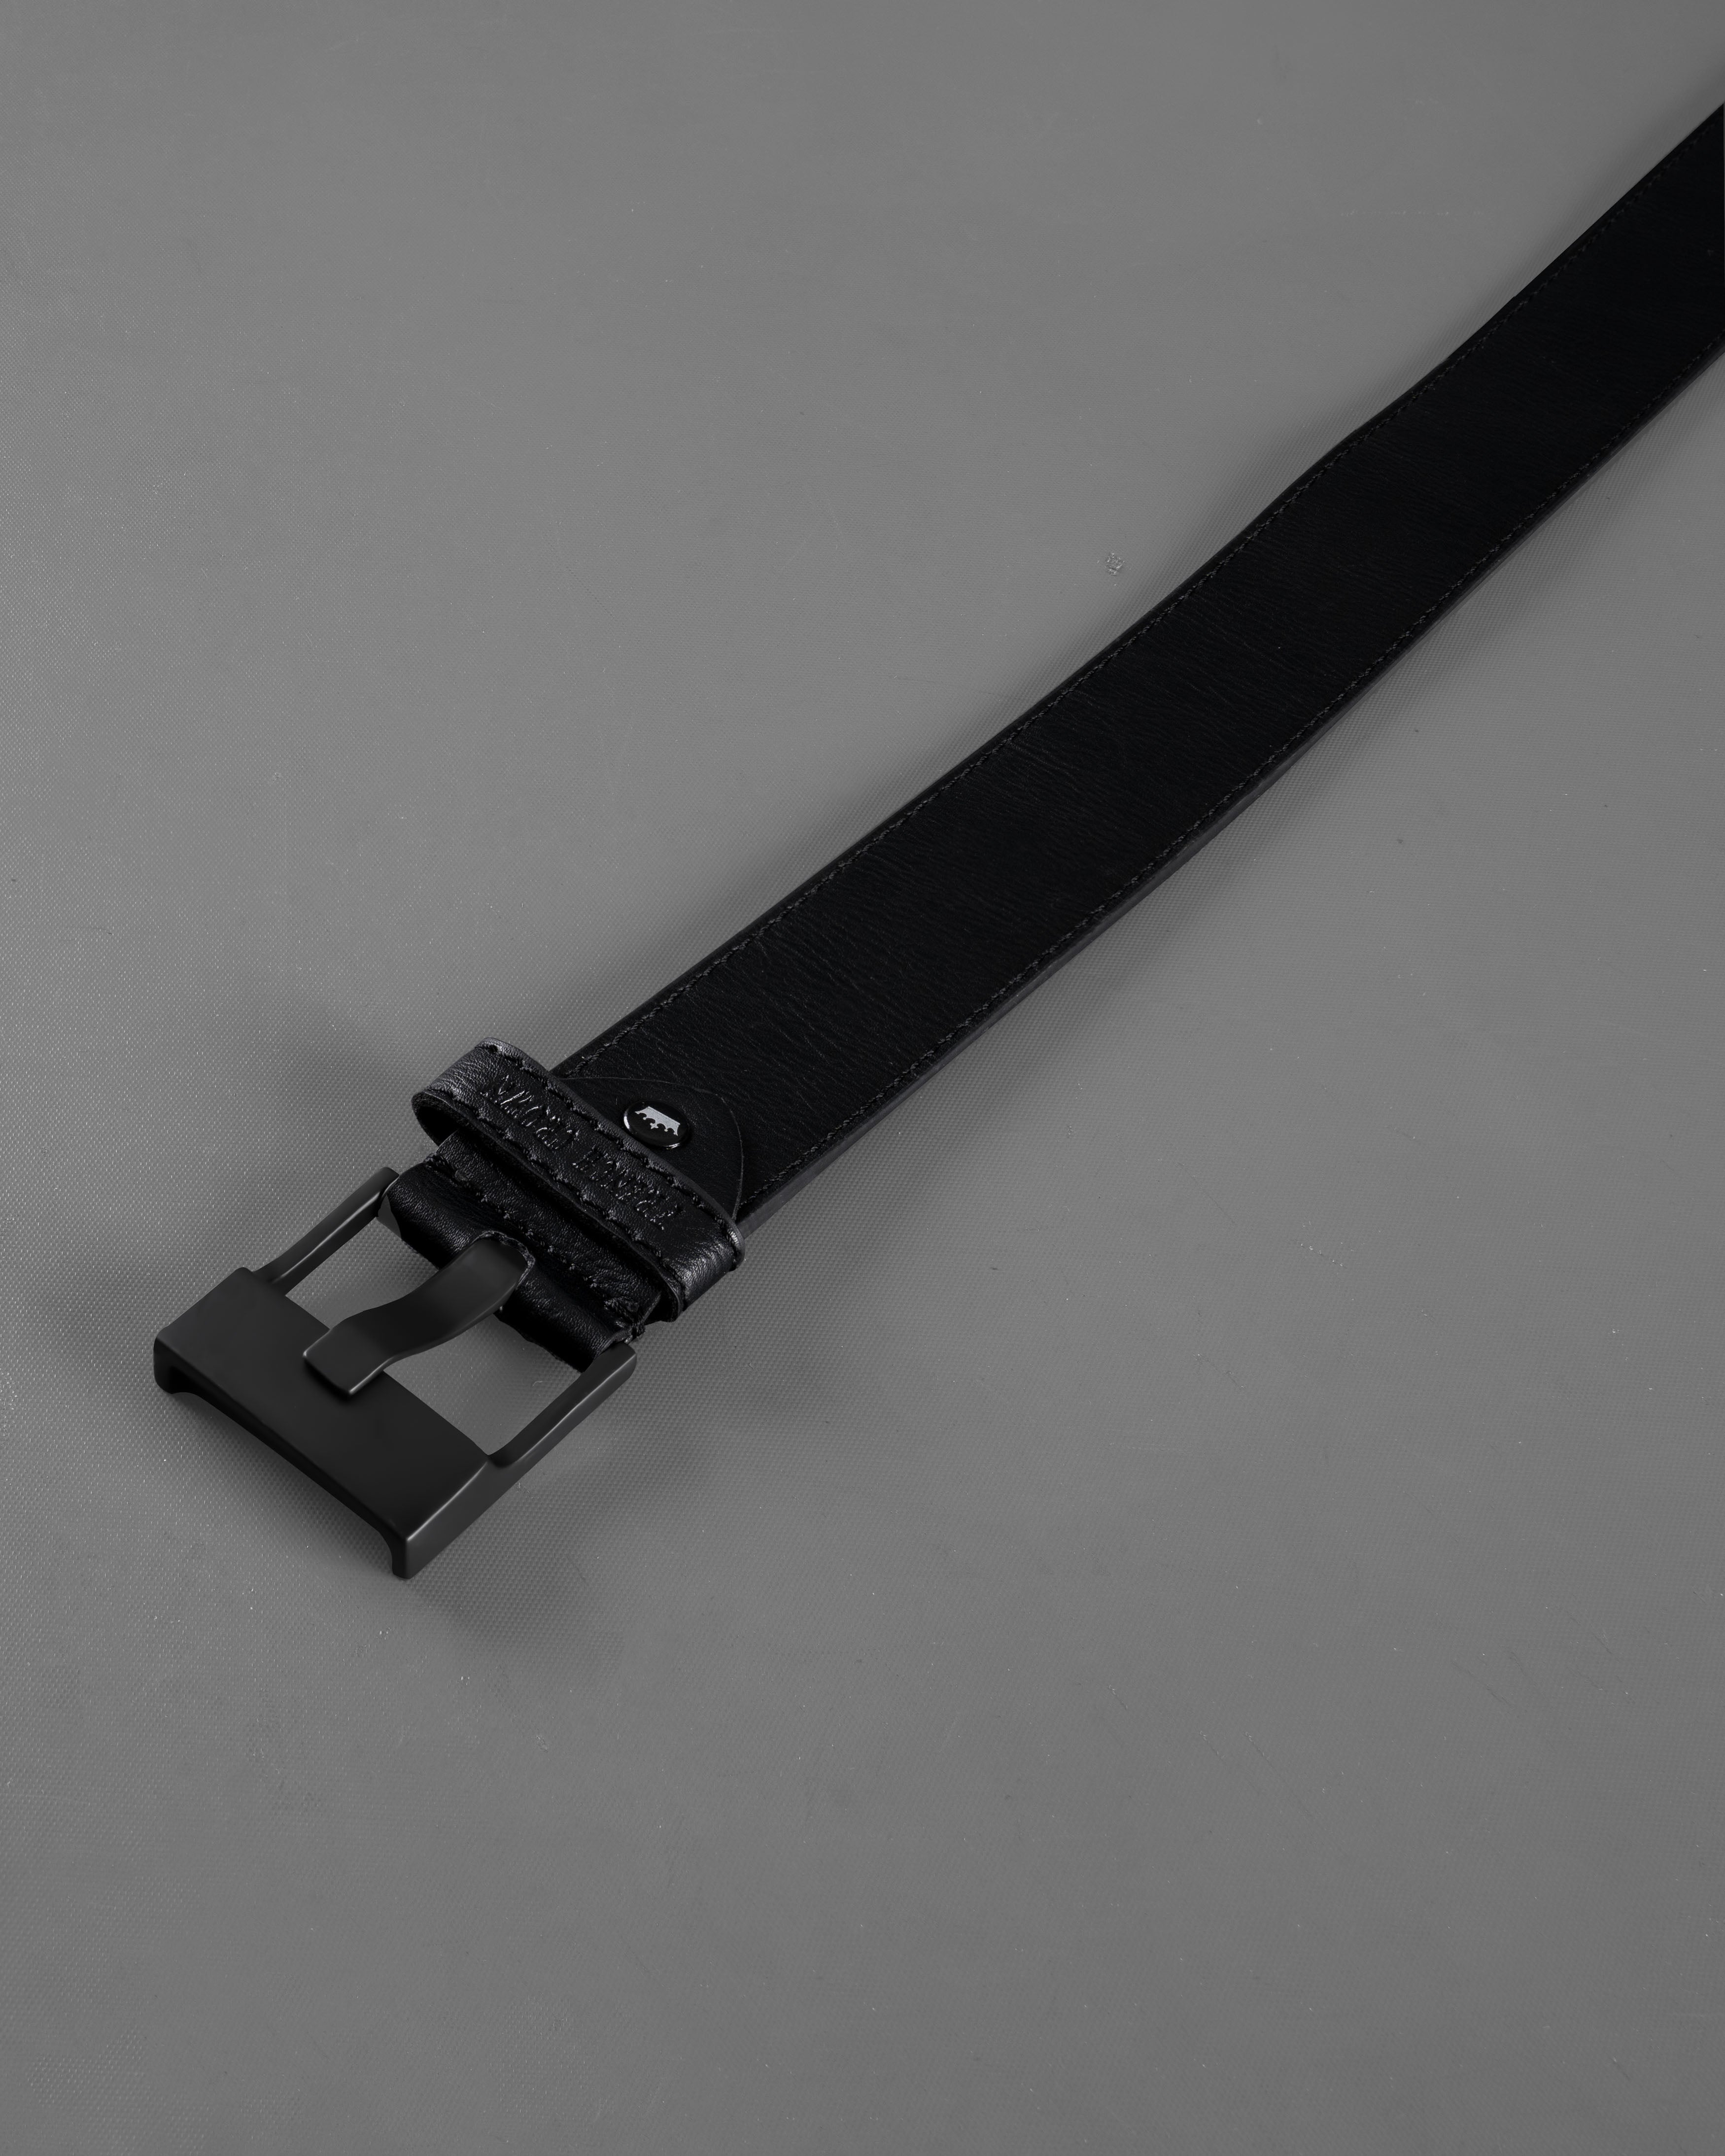 Jade Black Leather Free Lightweight Handcrafted Belt BT103-28, BT103-30, BT103-32, BT103-34, BT103-36, BT103-38